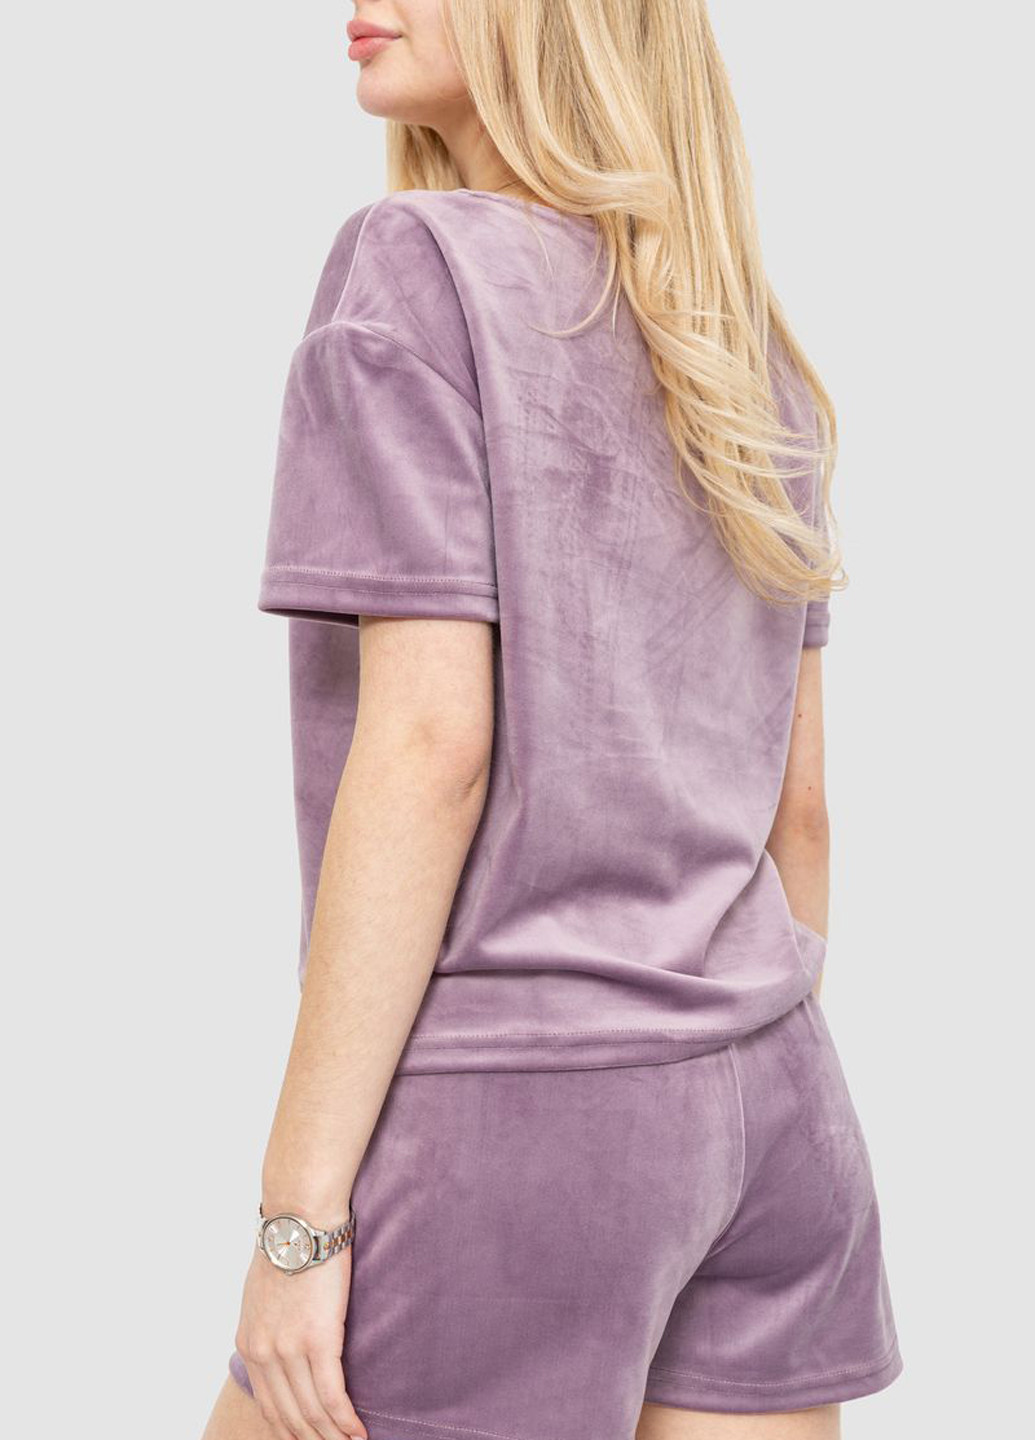 Лиловая всесезон пижама (футболка, шорты) футболка + шорты Ager